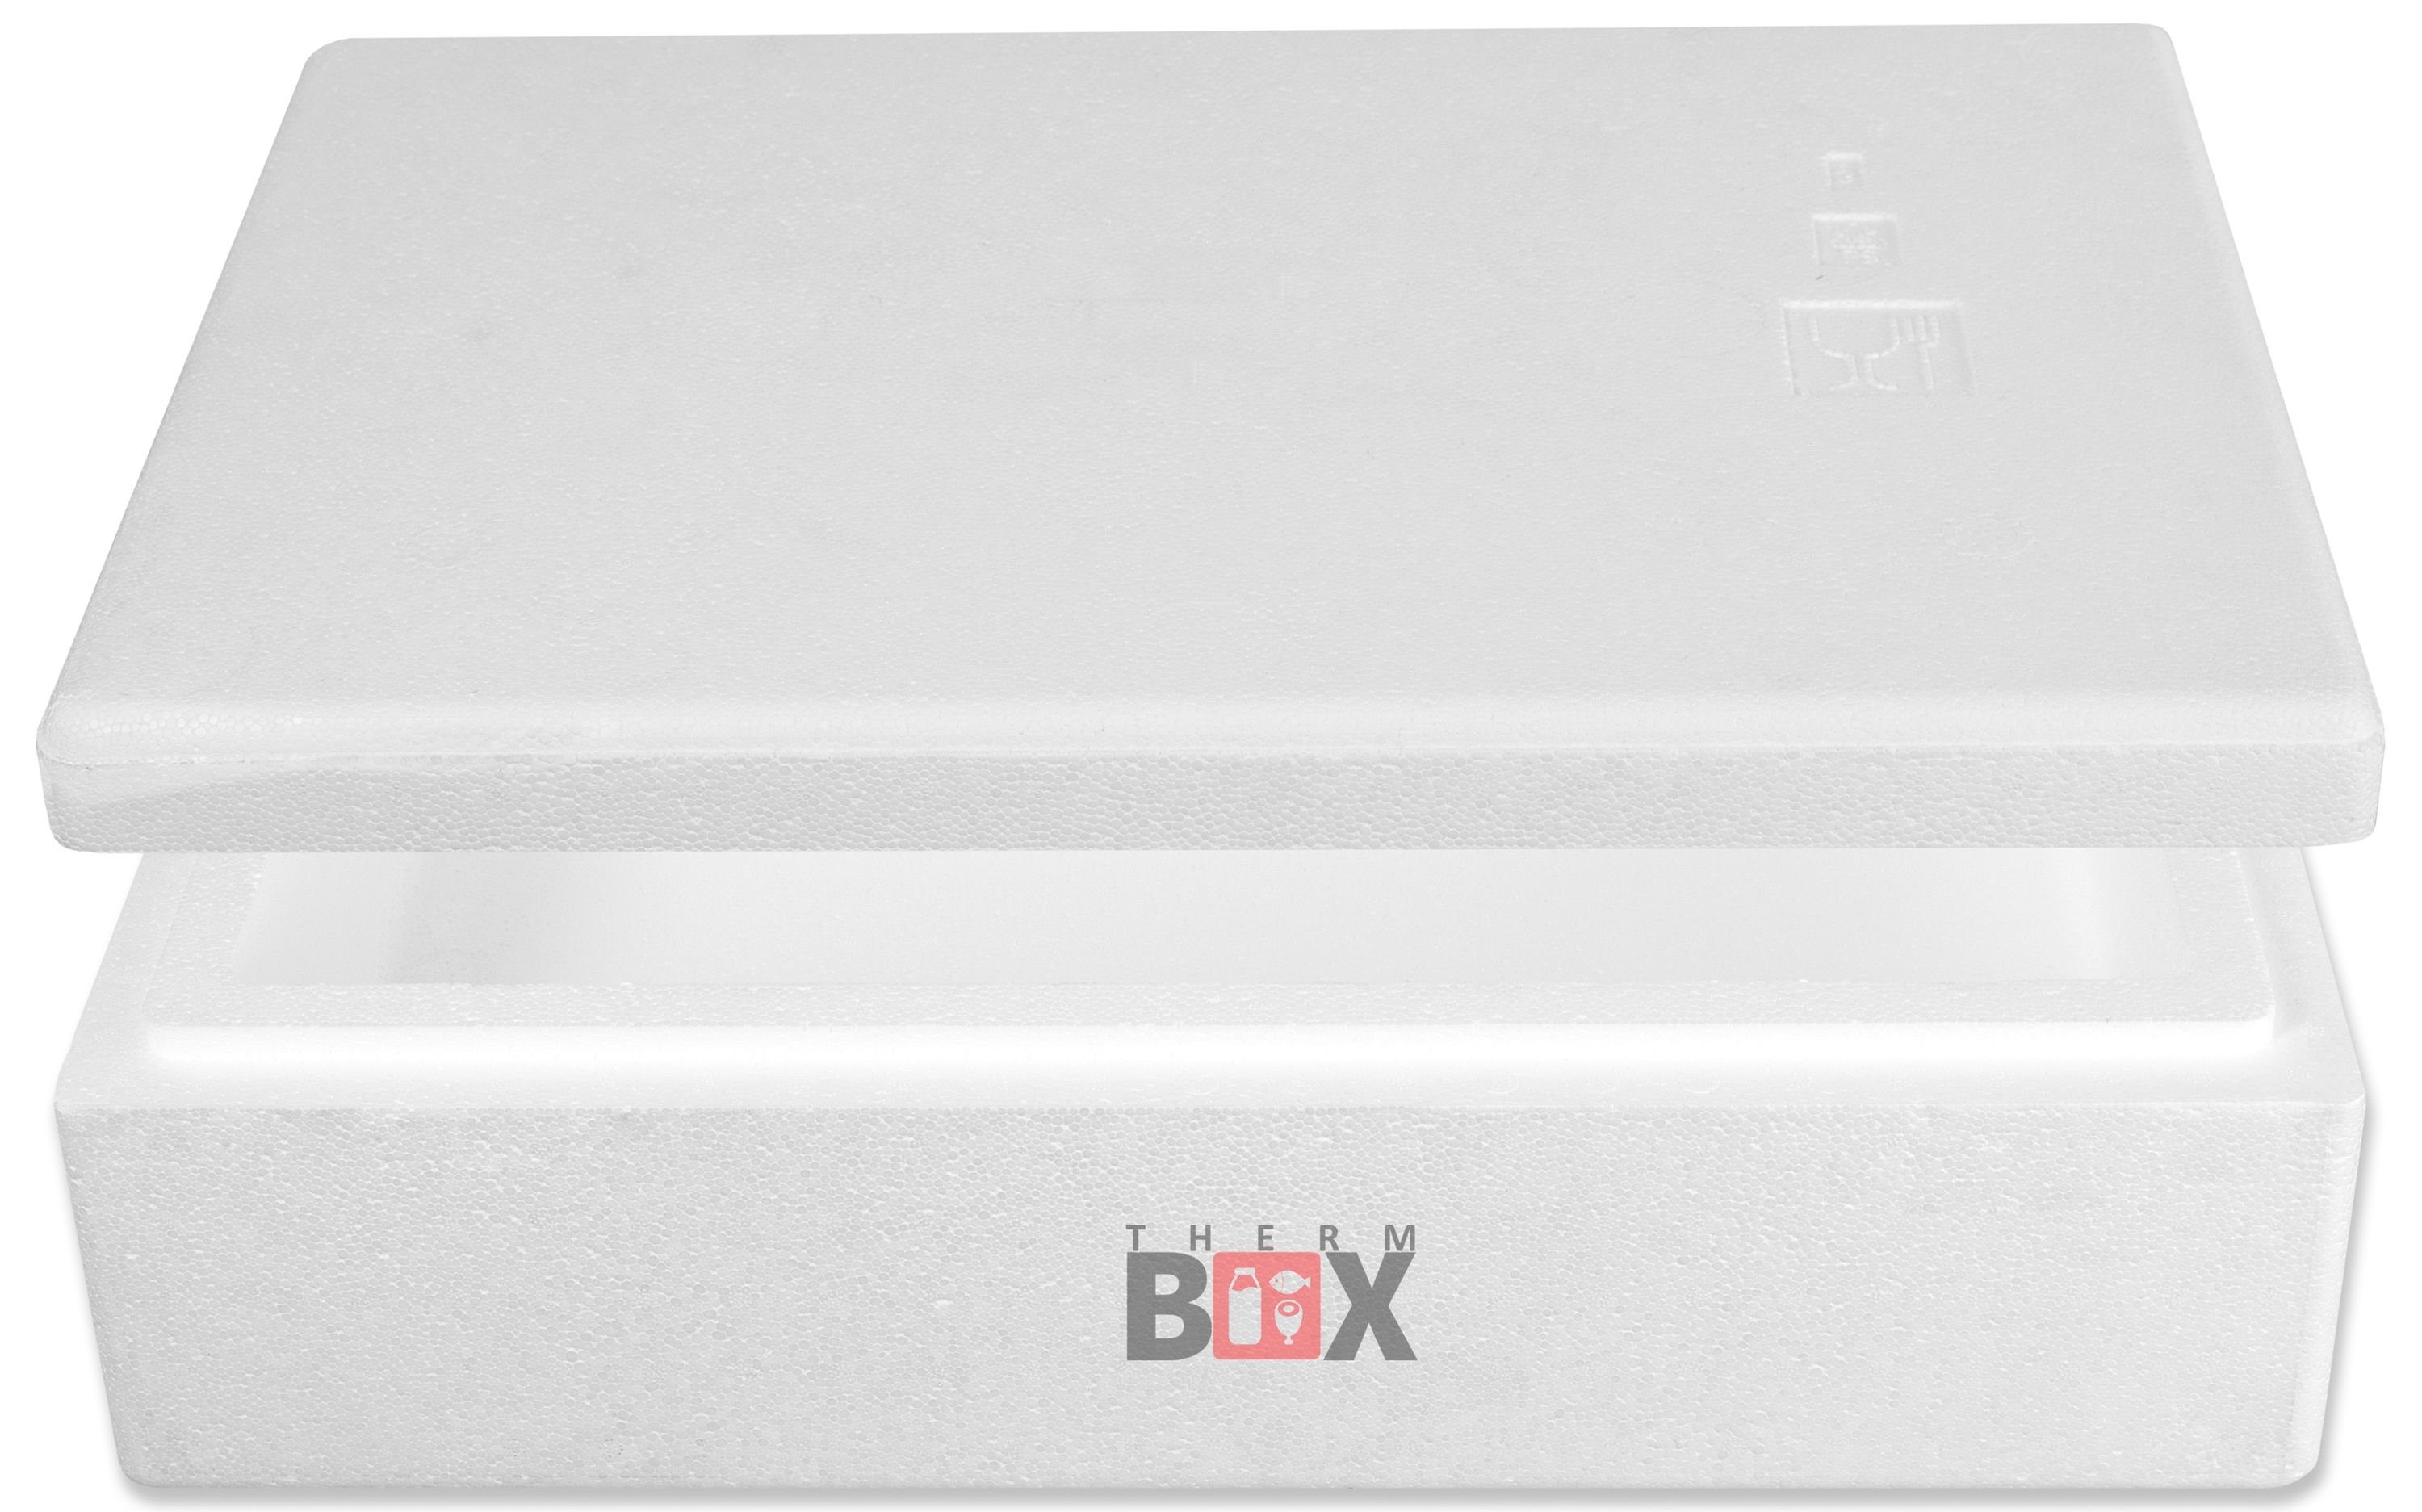 THERM-BOX Thermobehälter Modularbox 14M Wand: Styropor-Verdichtet, Isolierbox mit Box Erweiterbar Warmhaltebox Deckel 14L im 4cm Karton), Innenmaß:50x30x9cm, Kühlbox Thermbox Wiederverwendbar (0-tlg